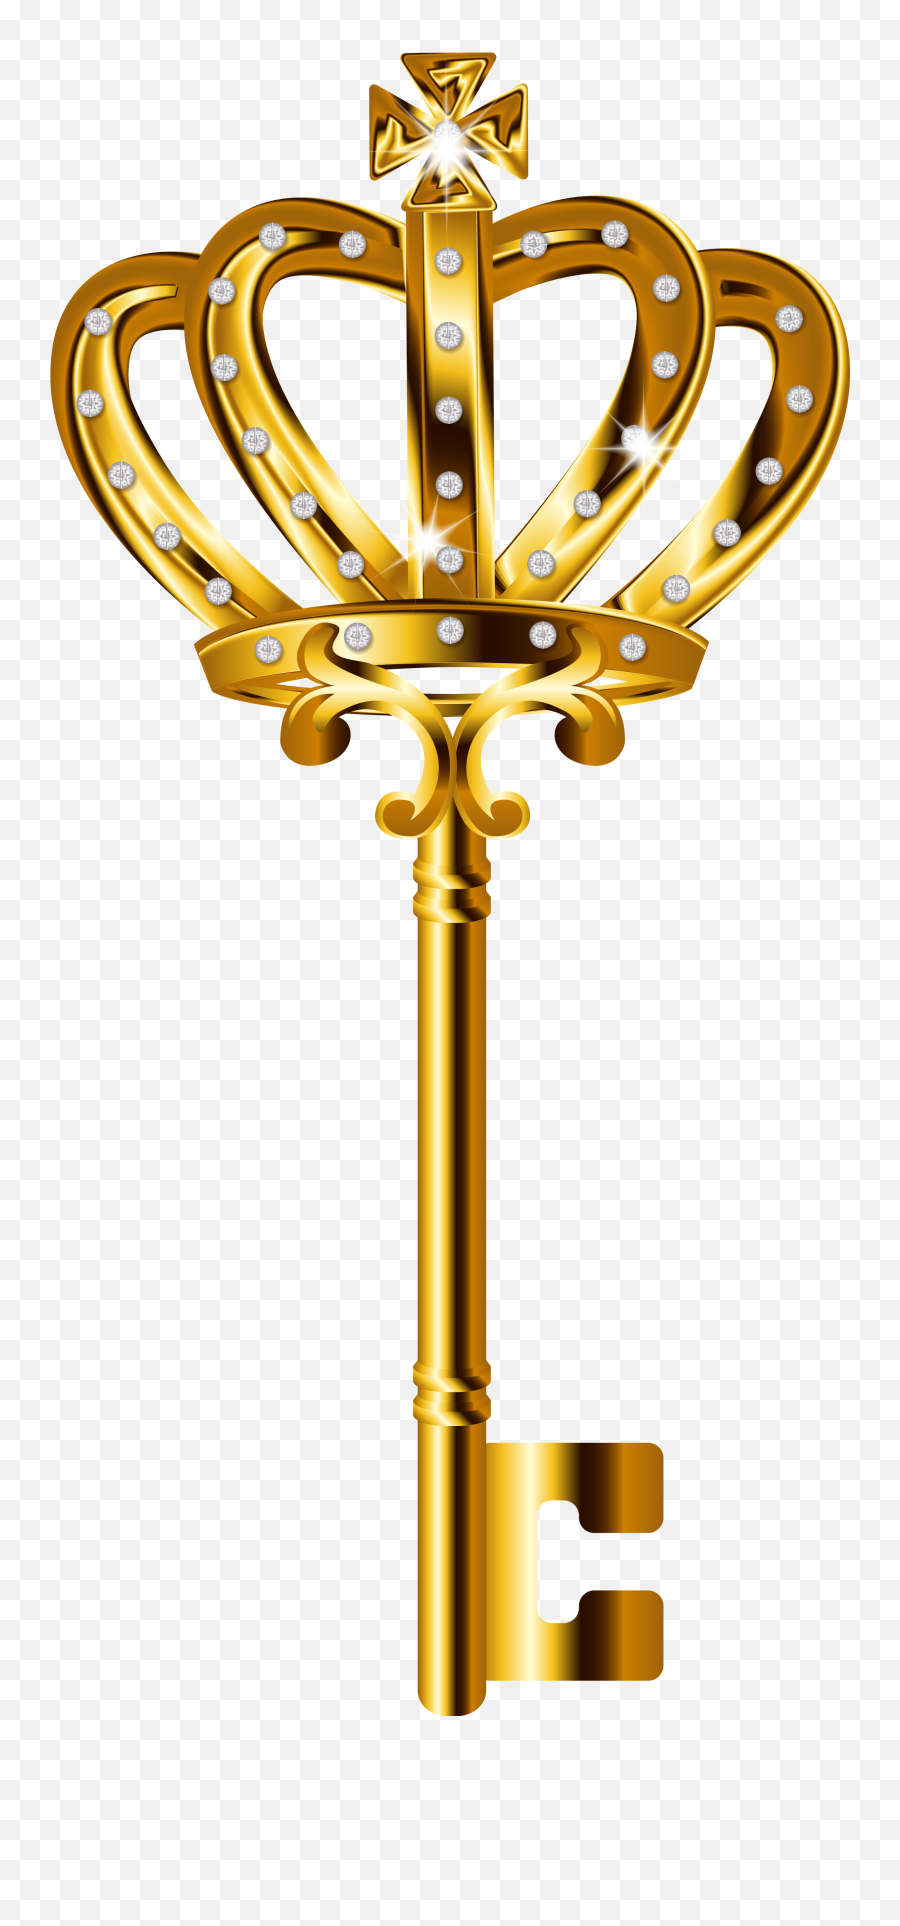 Golden Key Png Pic Arts - Golden Key Logo Png,Key Transparent Background